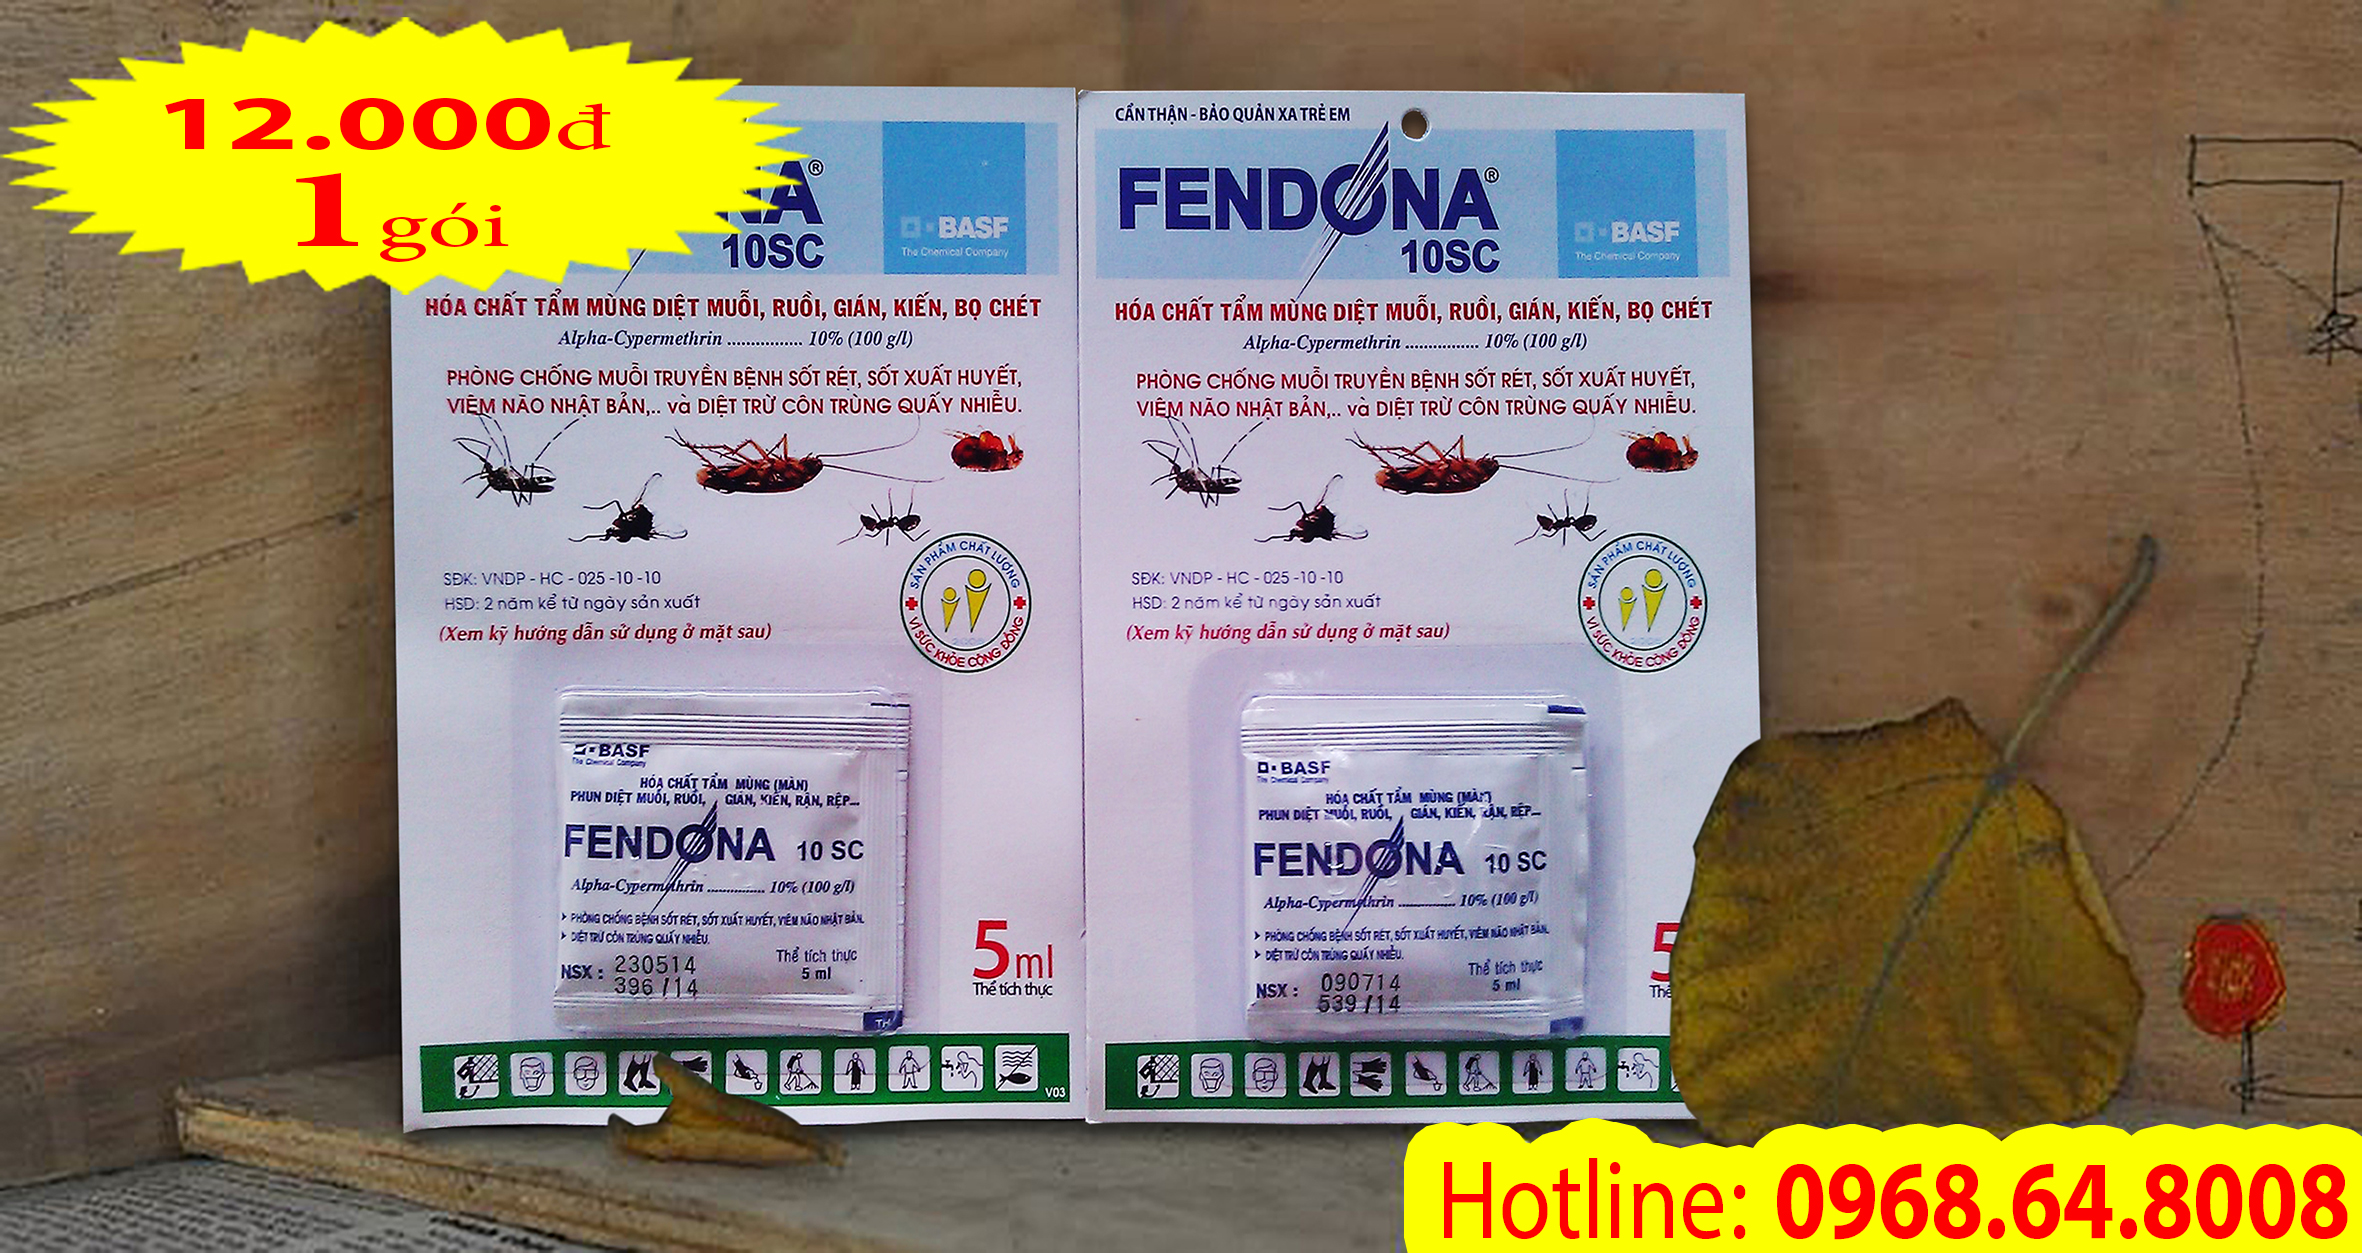 Fendona 10SC (5ml) - (BASF - CHLB ĐỨC) - Thuốc diệt côn trùng, muỗi, gián, ruồi, kiến, bọ chét...